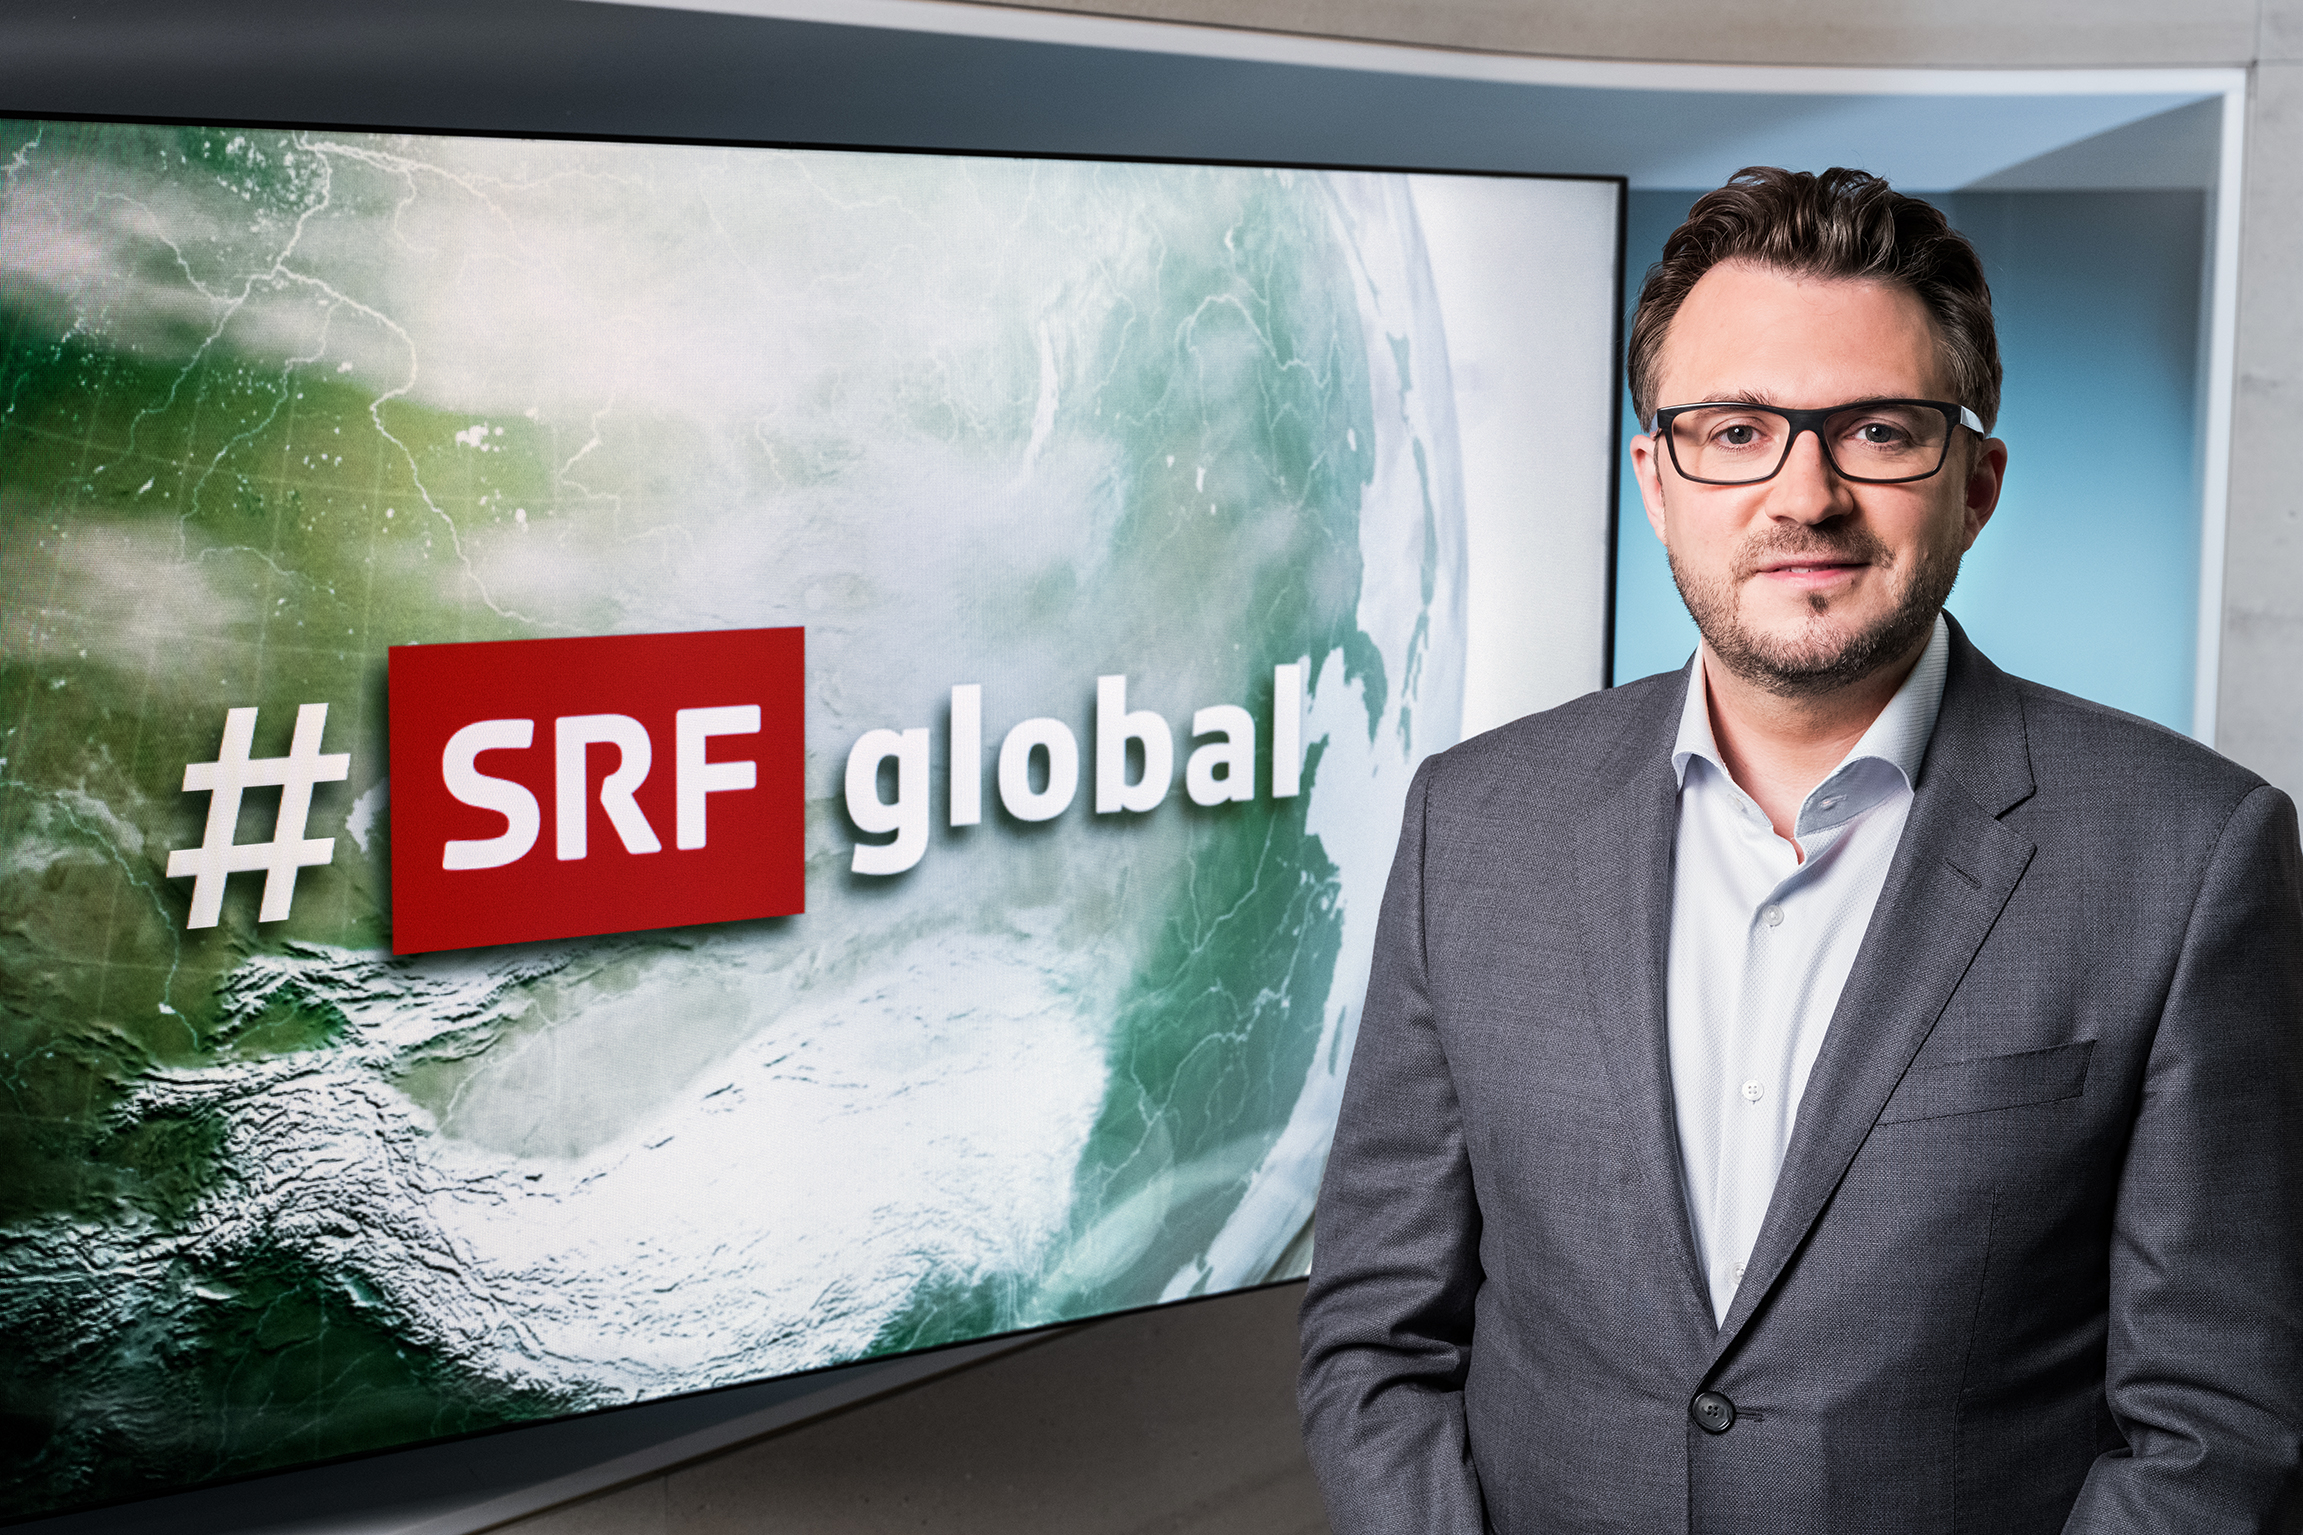 Sebastian RamspeckModerator #SRF Global2020Copyright: SRF/Oscar Alessio